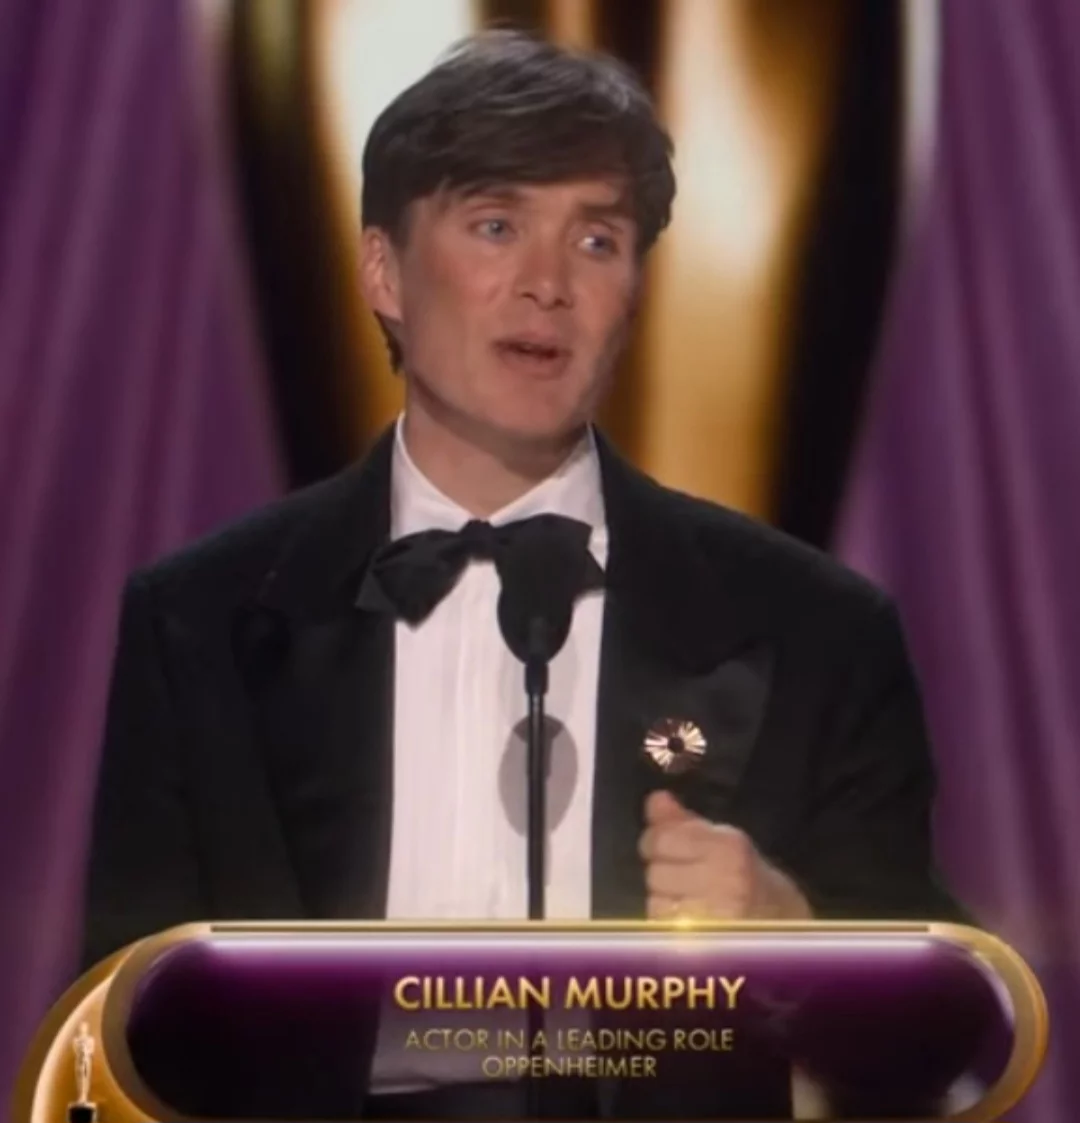 Cillian Murphy fatura o Oscar de Melhor Ator. Conheça sua trajetória - Reprodução de vídeo TNT